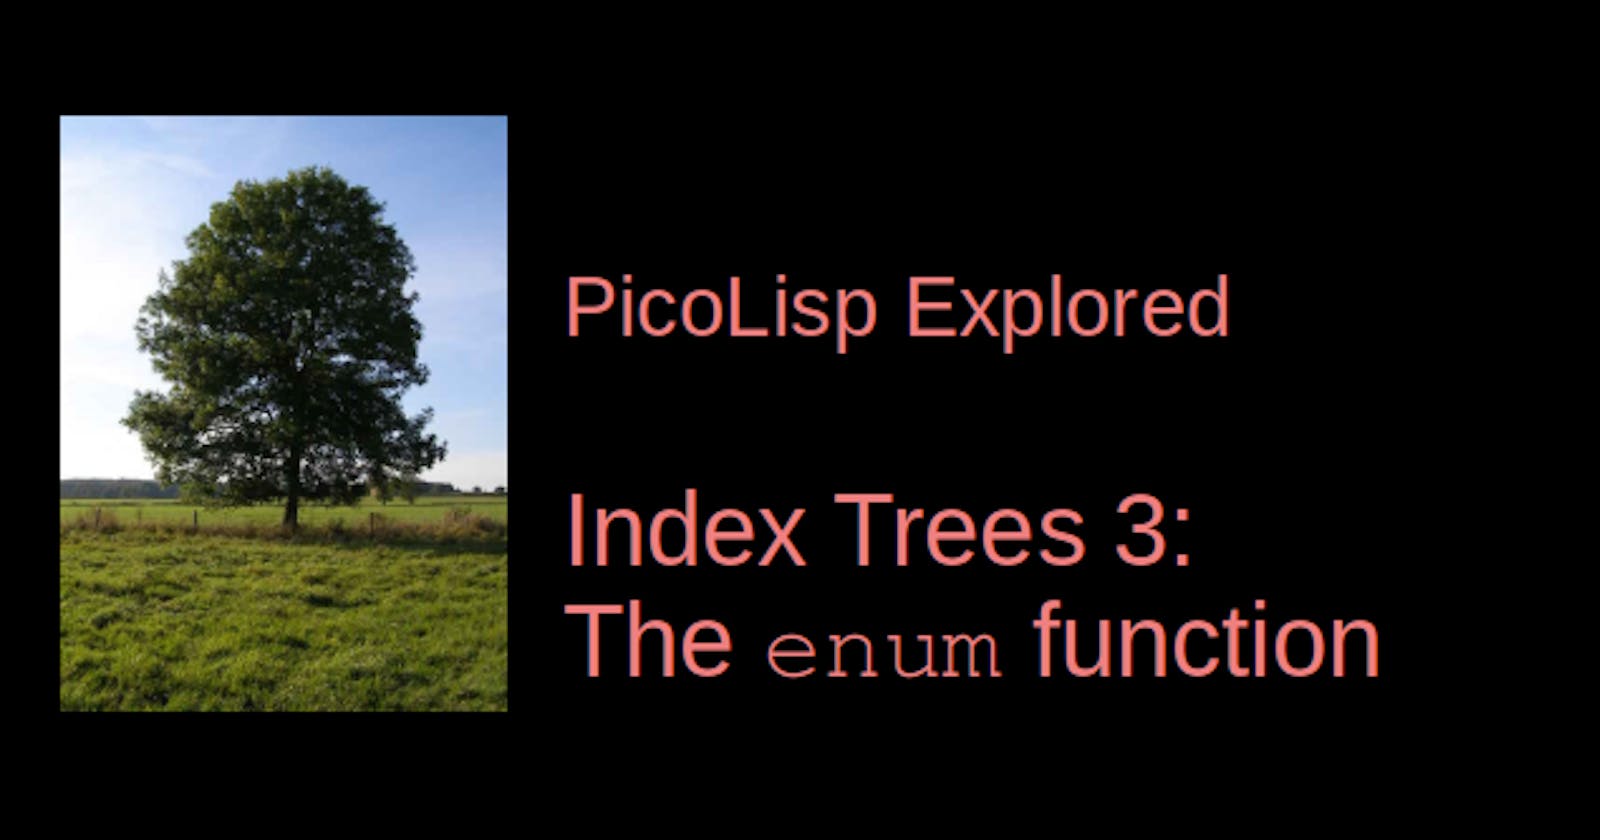 PicoLisp Explored: The enum function